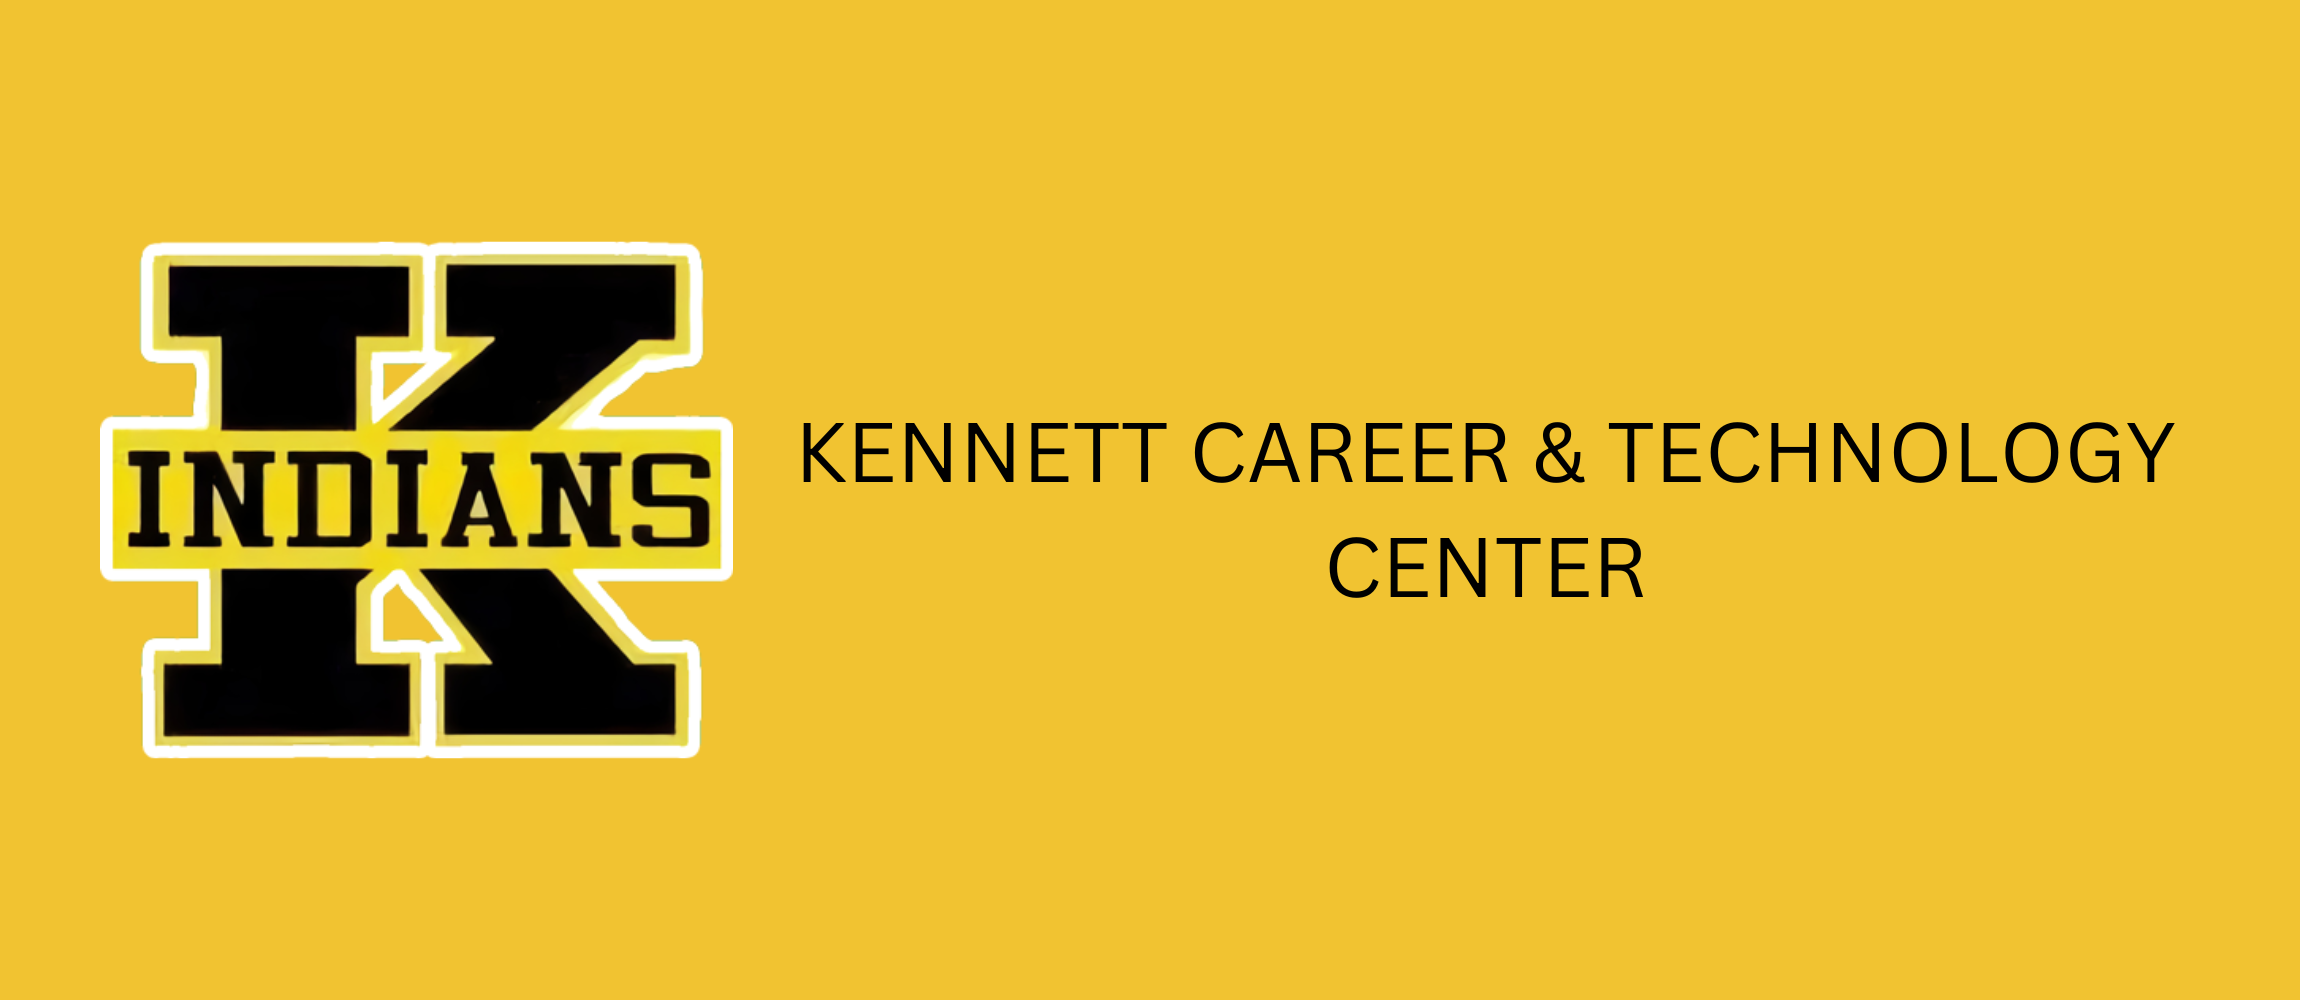 kennett career and technology center